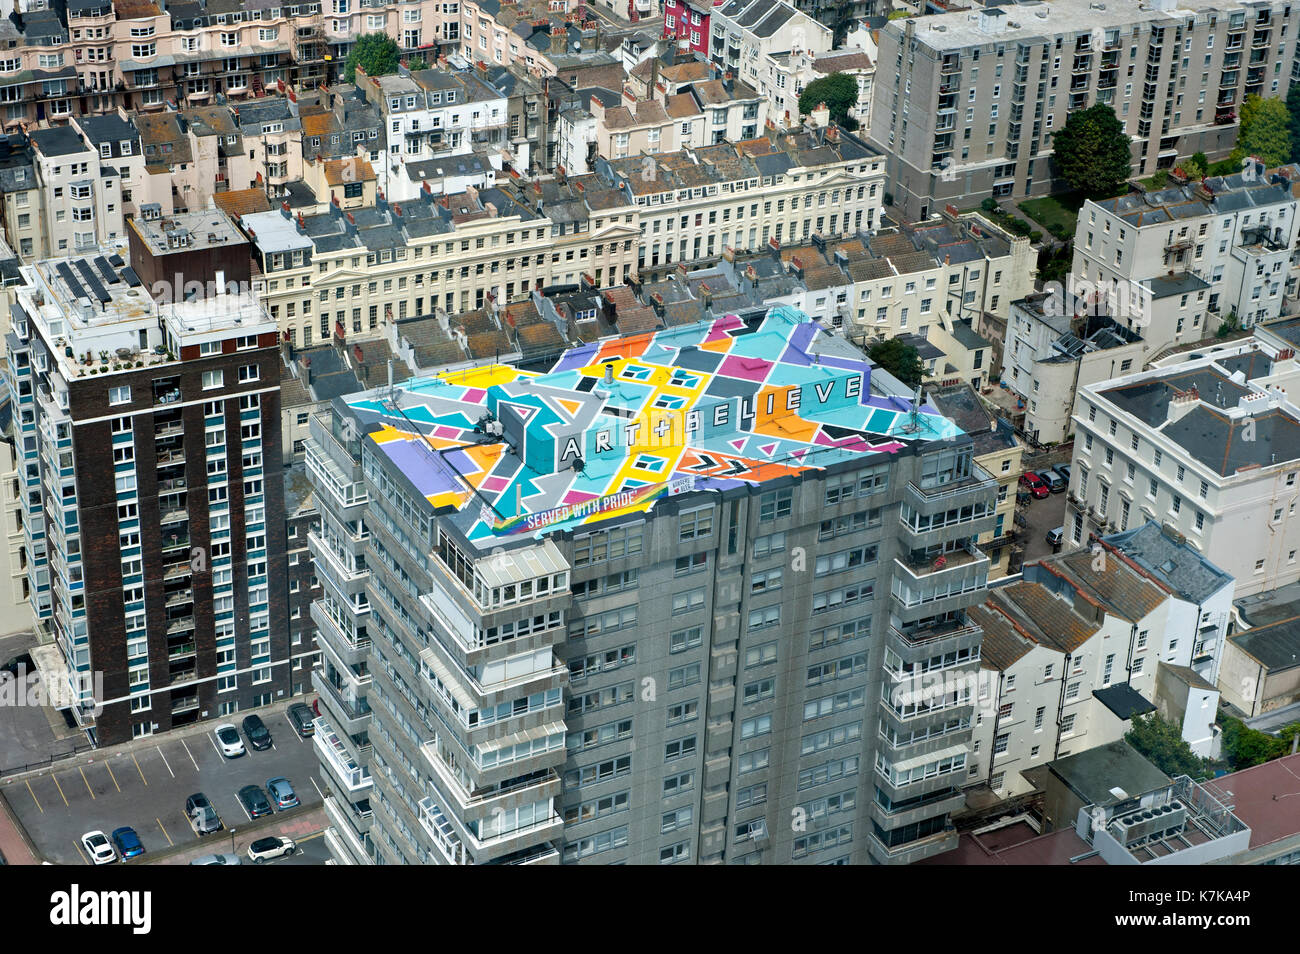 Farbenfrohe Wandgemälde auf der Dachterrasse im Holiday Inn in Brighton, England von der British Airways ich 360 Turm gesehen Stockfoto